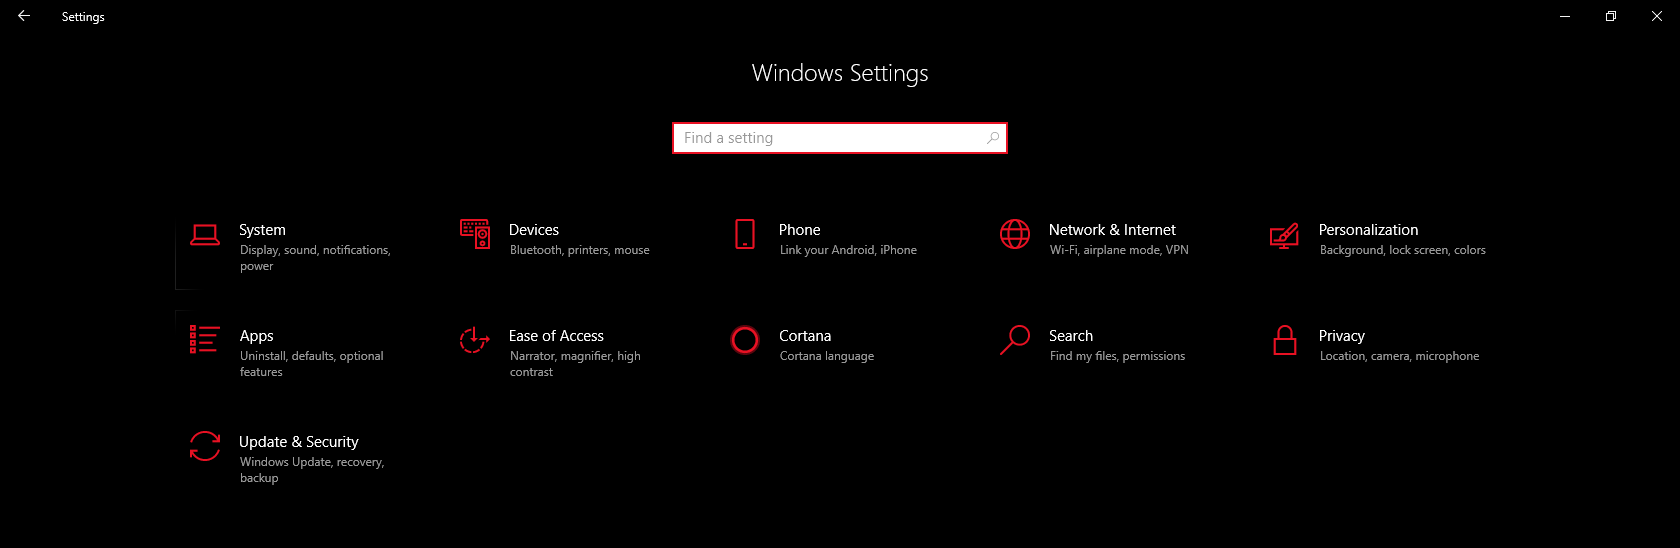 Windows settings options missing 6d93d22e-c0b6-412e-a4c6-f25d329f6d22?upload=true.png